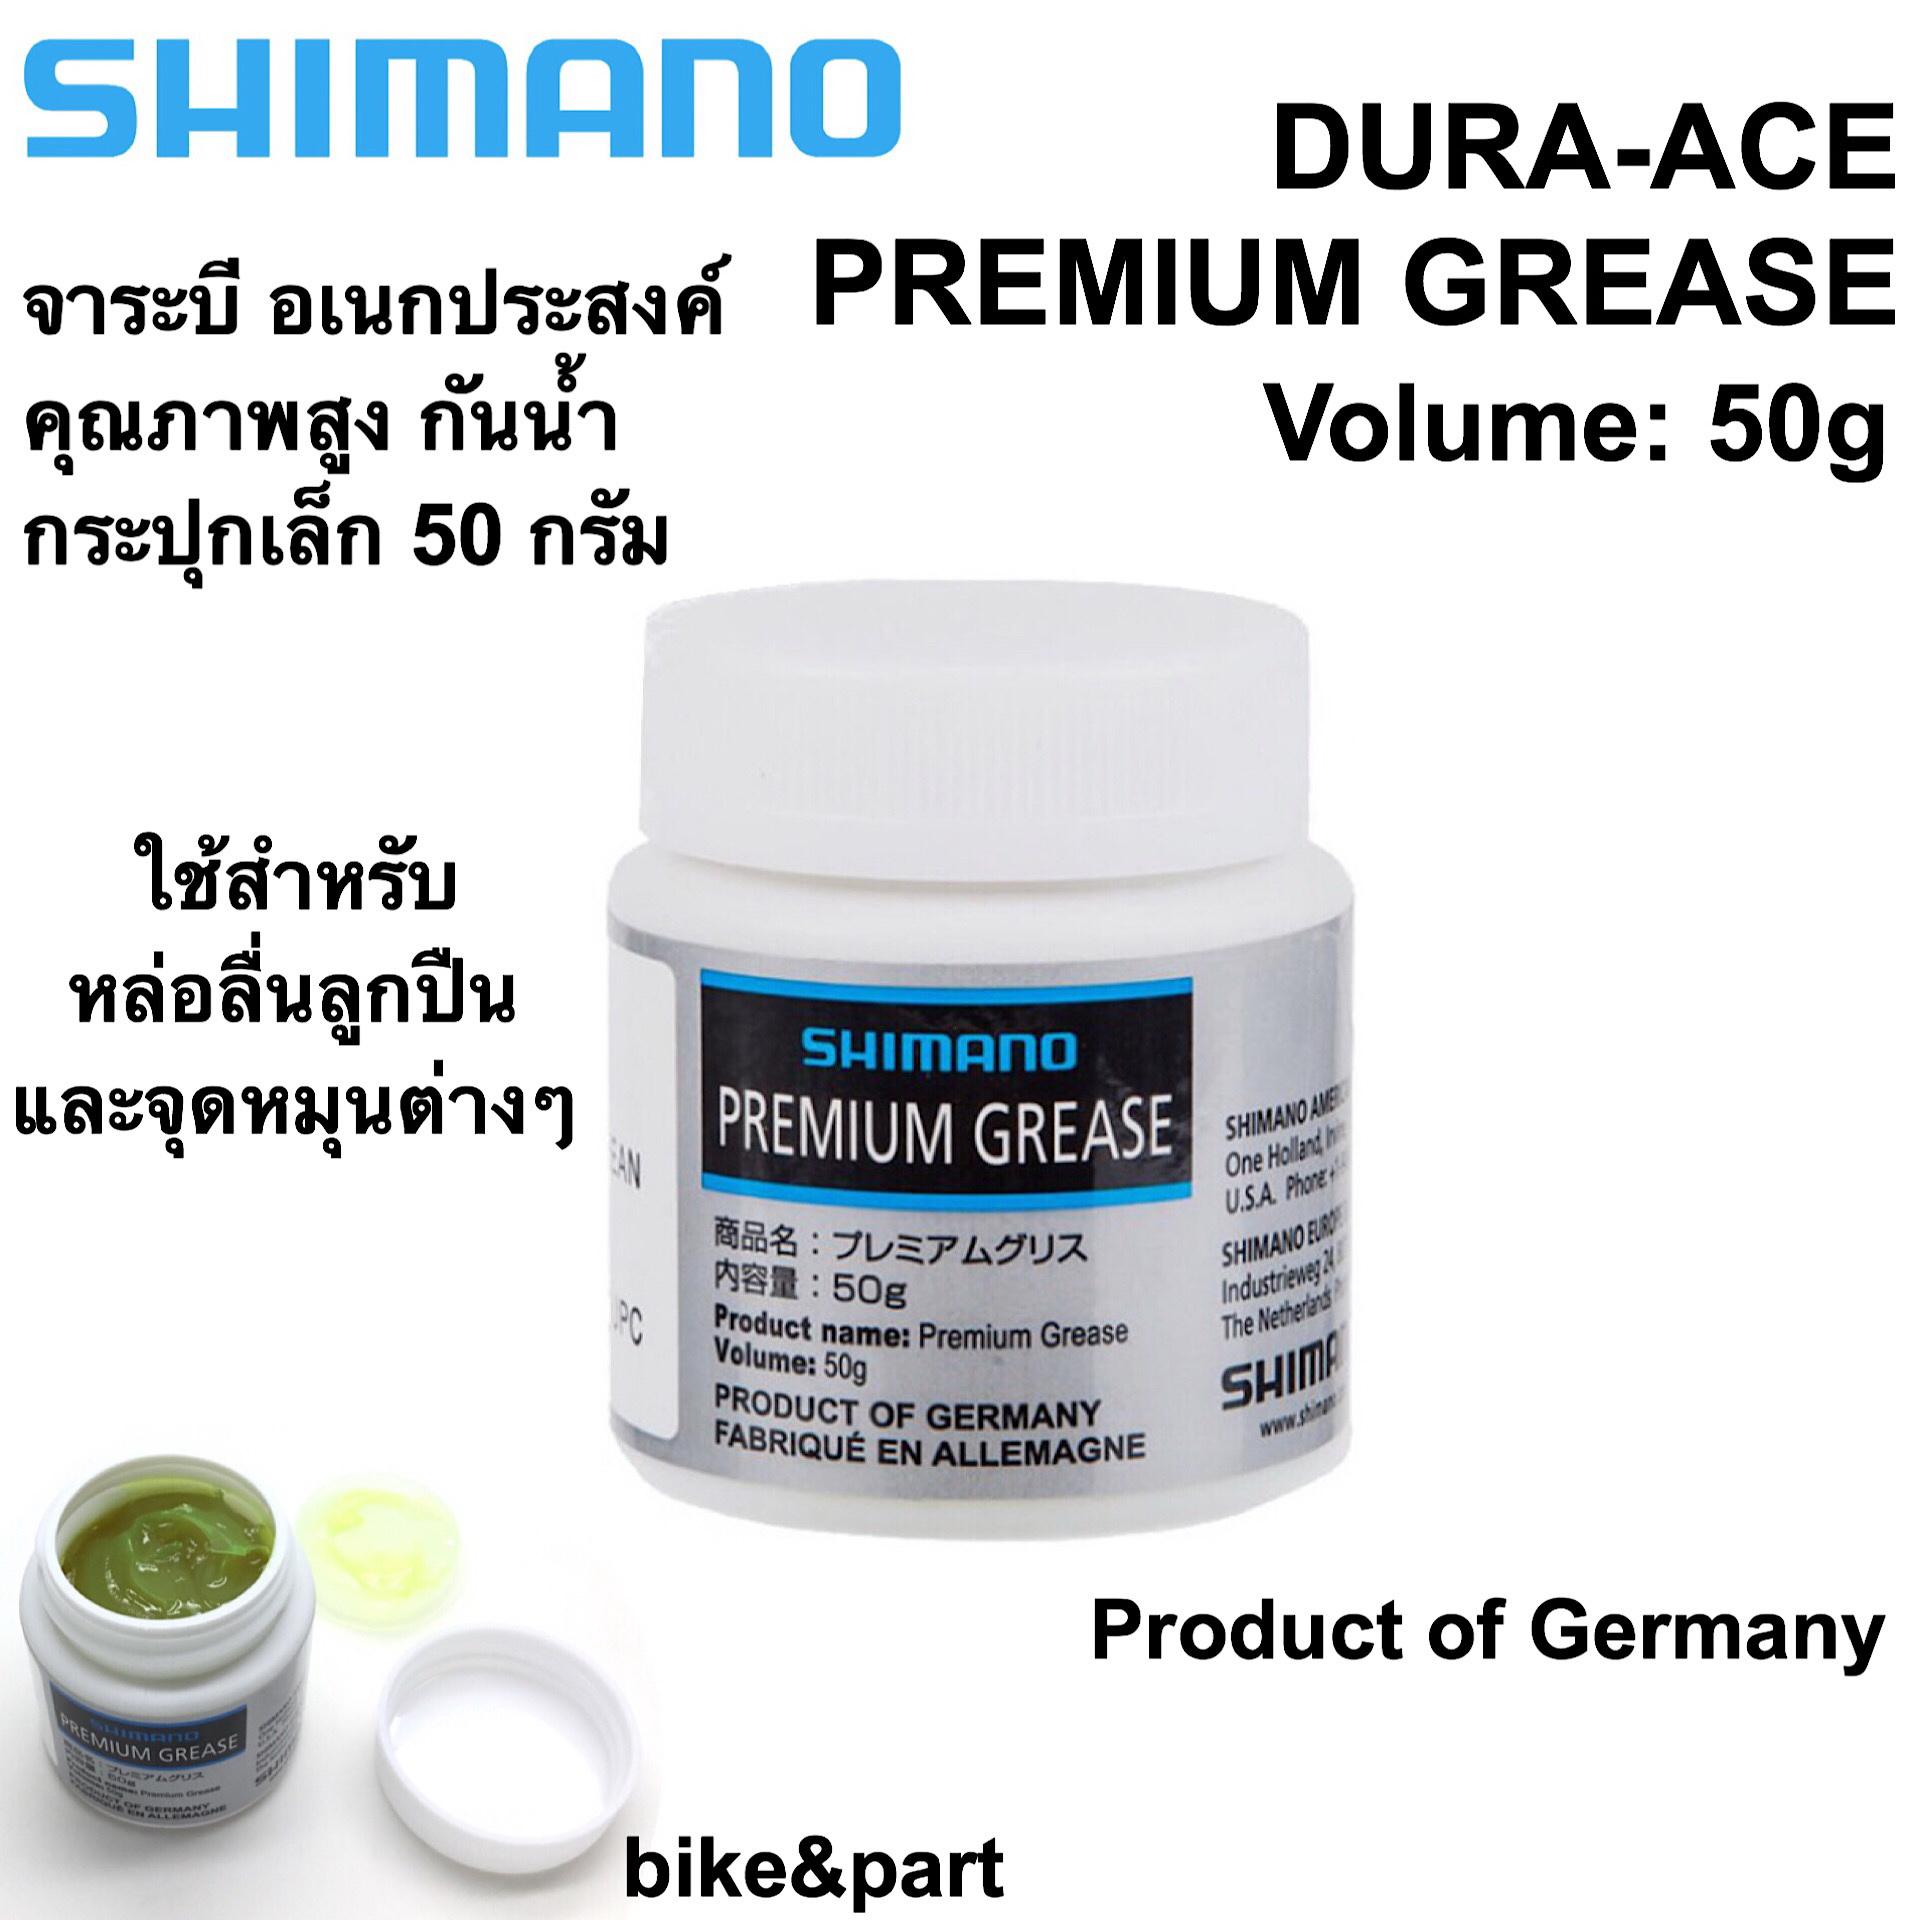 จารบี SHIMANO DURA-ACE Premium Grease กระปุกเล็ก 50g